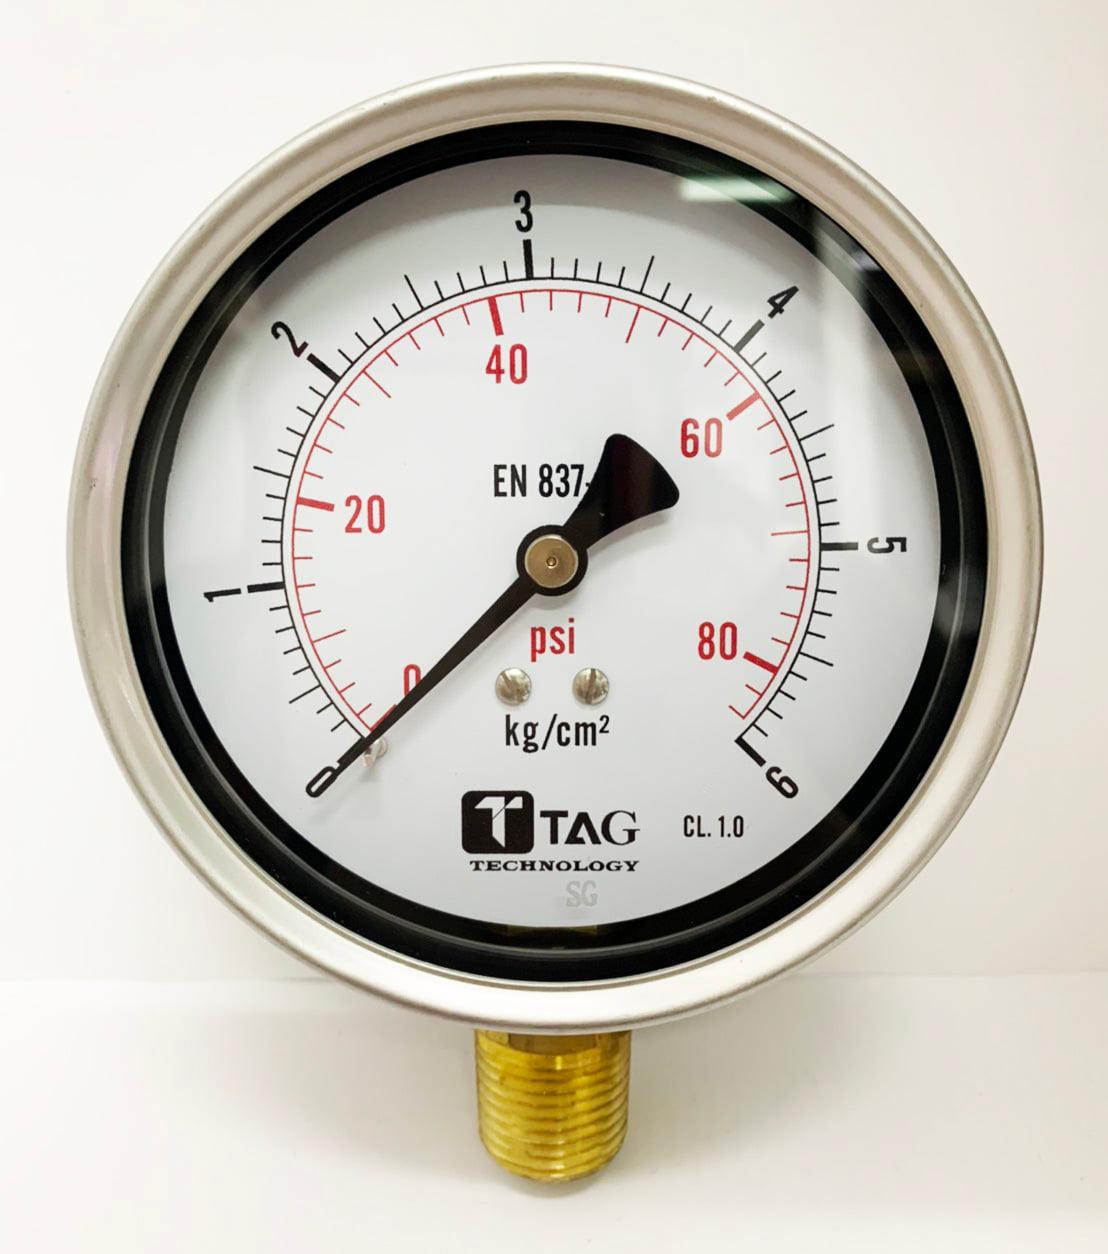 ไขข้อสงสัย! ประโยชน์ของ pressure gauge มีอะไรบ้าง?